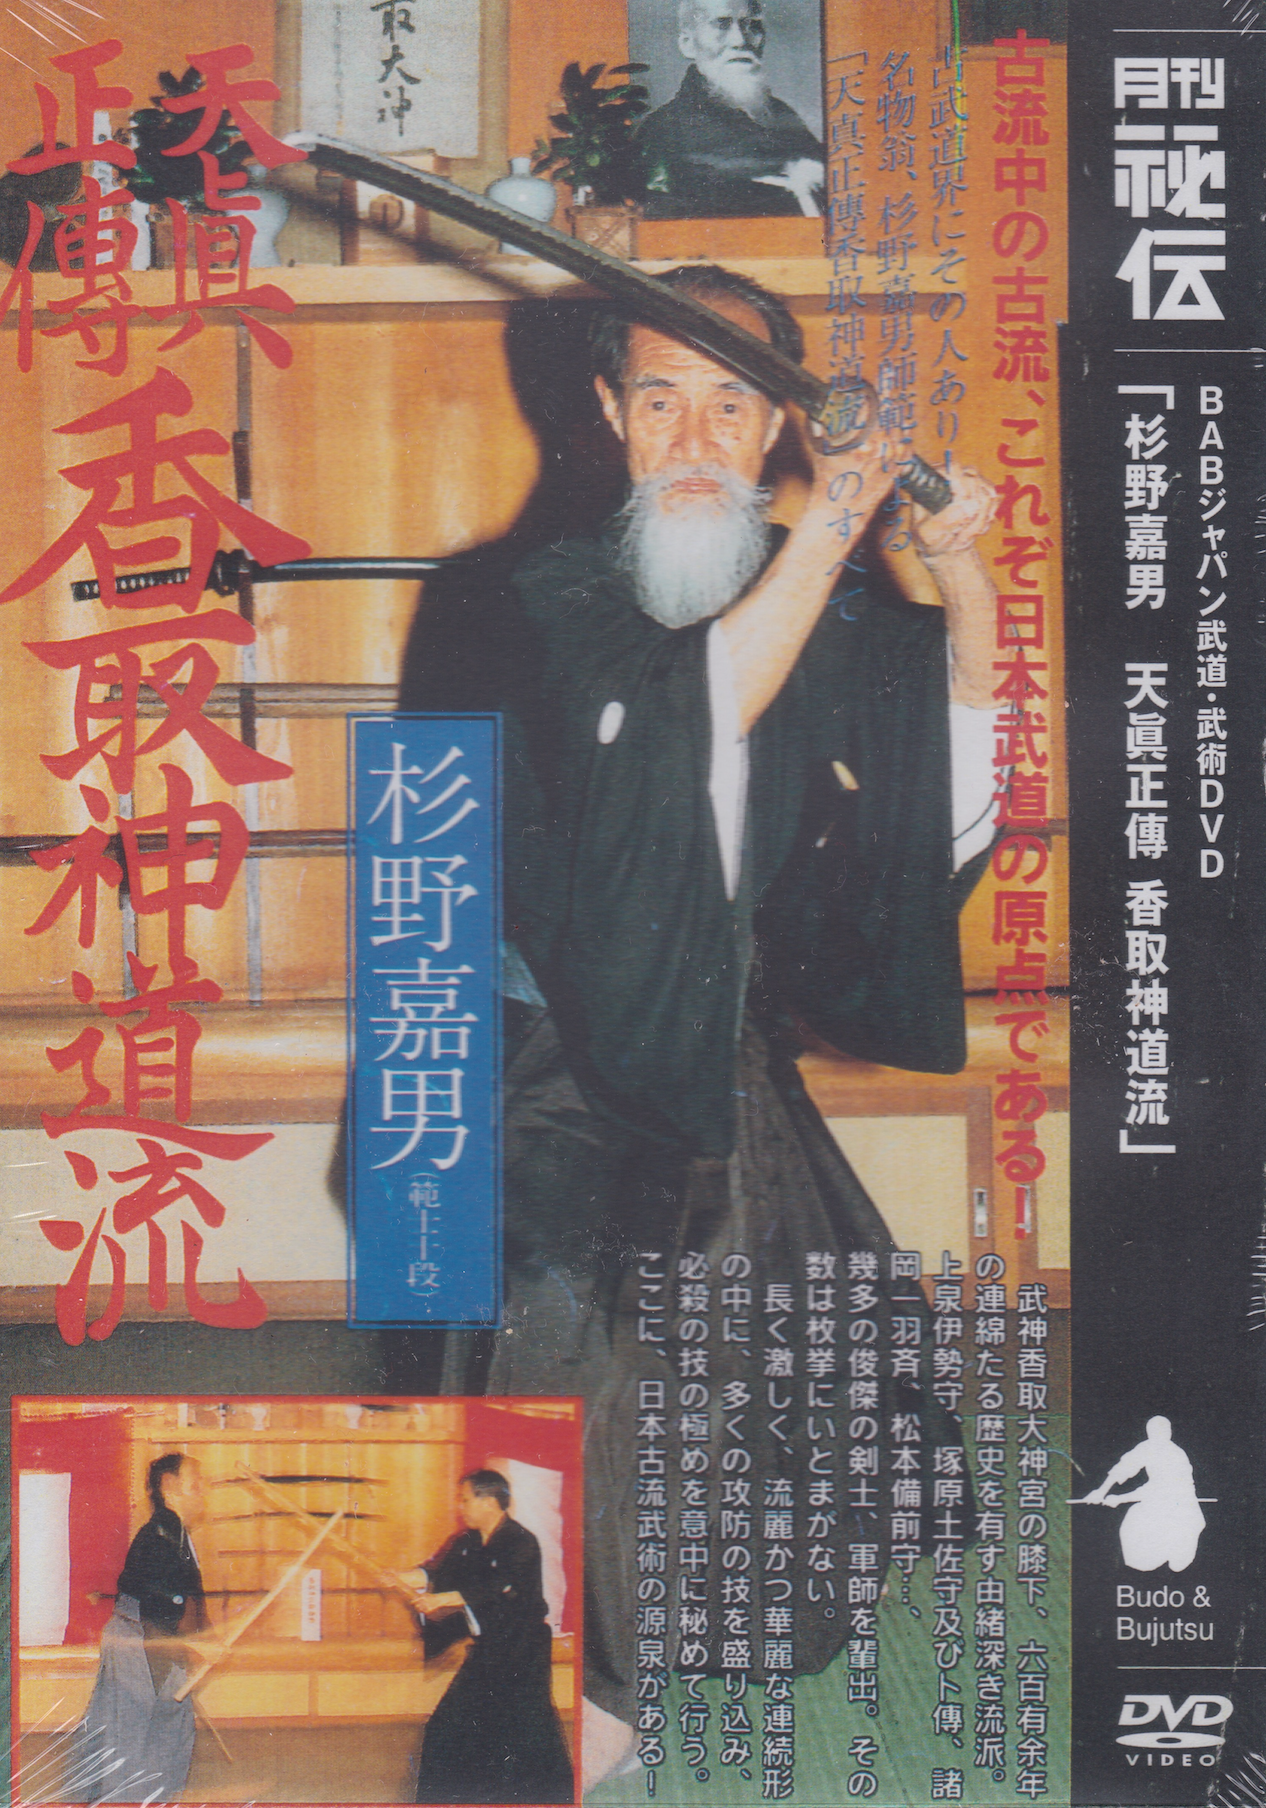 Tenshin Shoden Katori Shinto Ryu DVD with Yoshio Sugino